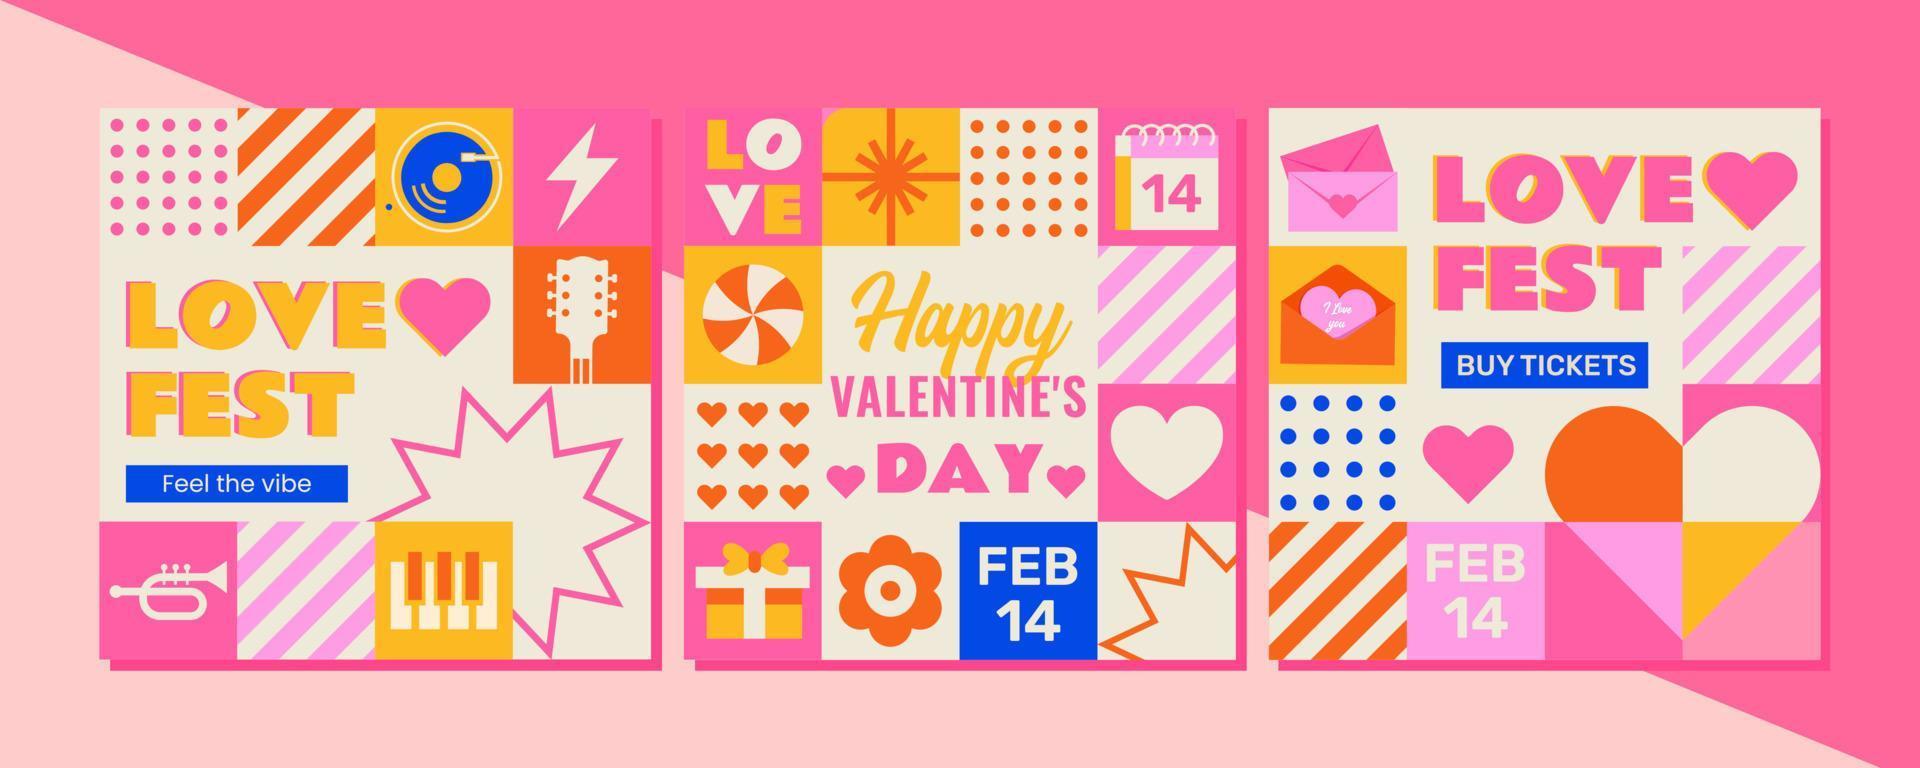 een reeks van 3 mozaïek-stijl Sjablonen naar vieren Valentijnsdag dag festival. de ontwerp is perfect net zo een vakantie uitnodiging, ansichtkaart of sociaal media advertentie en veel meer vector